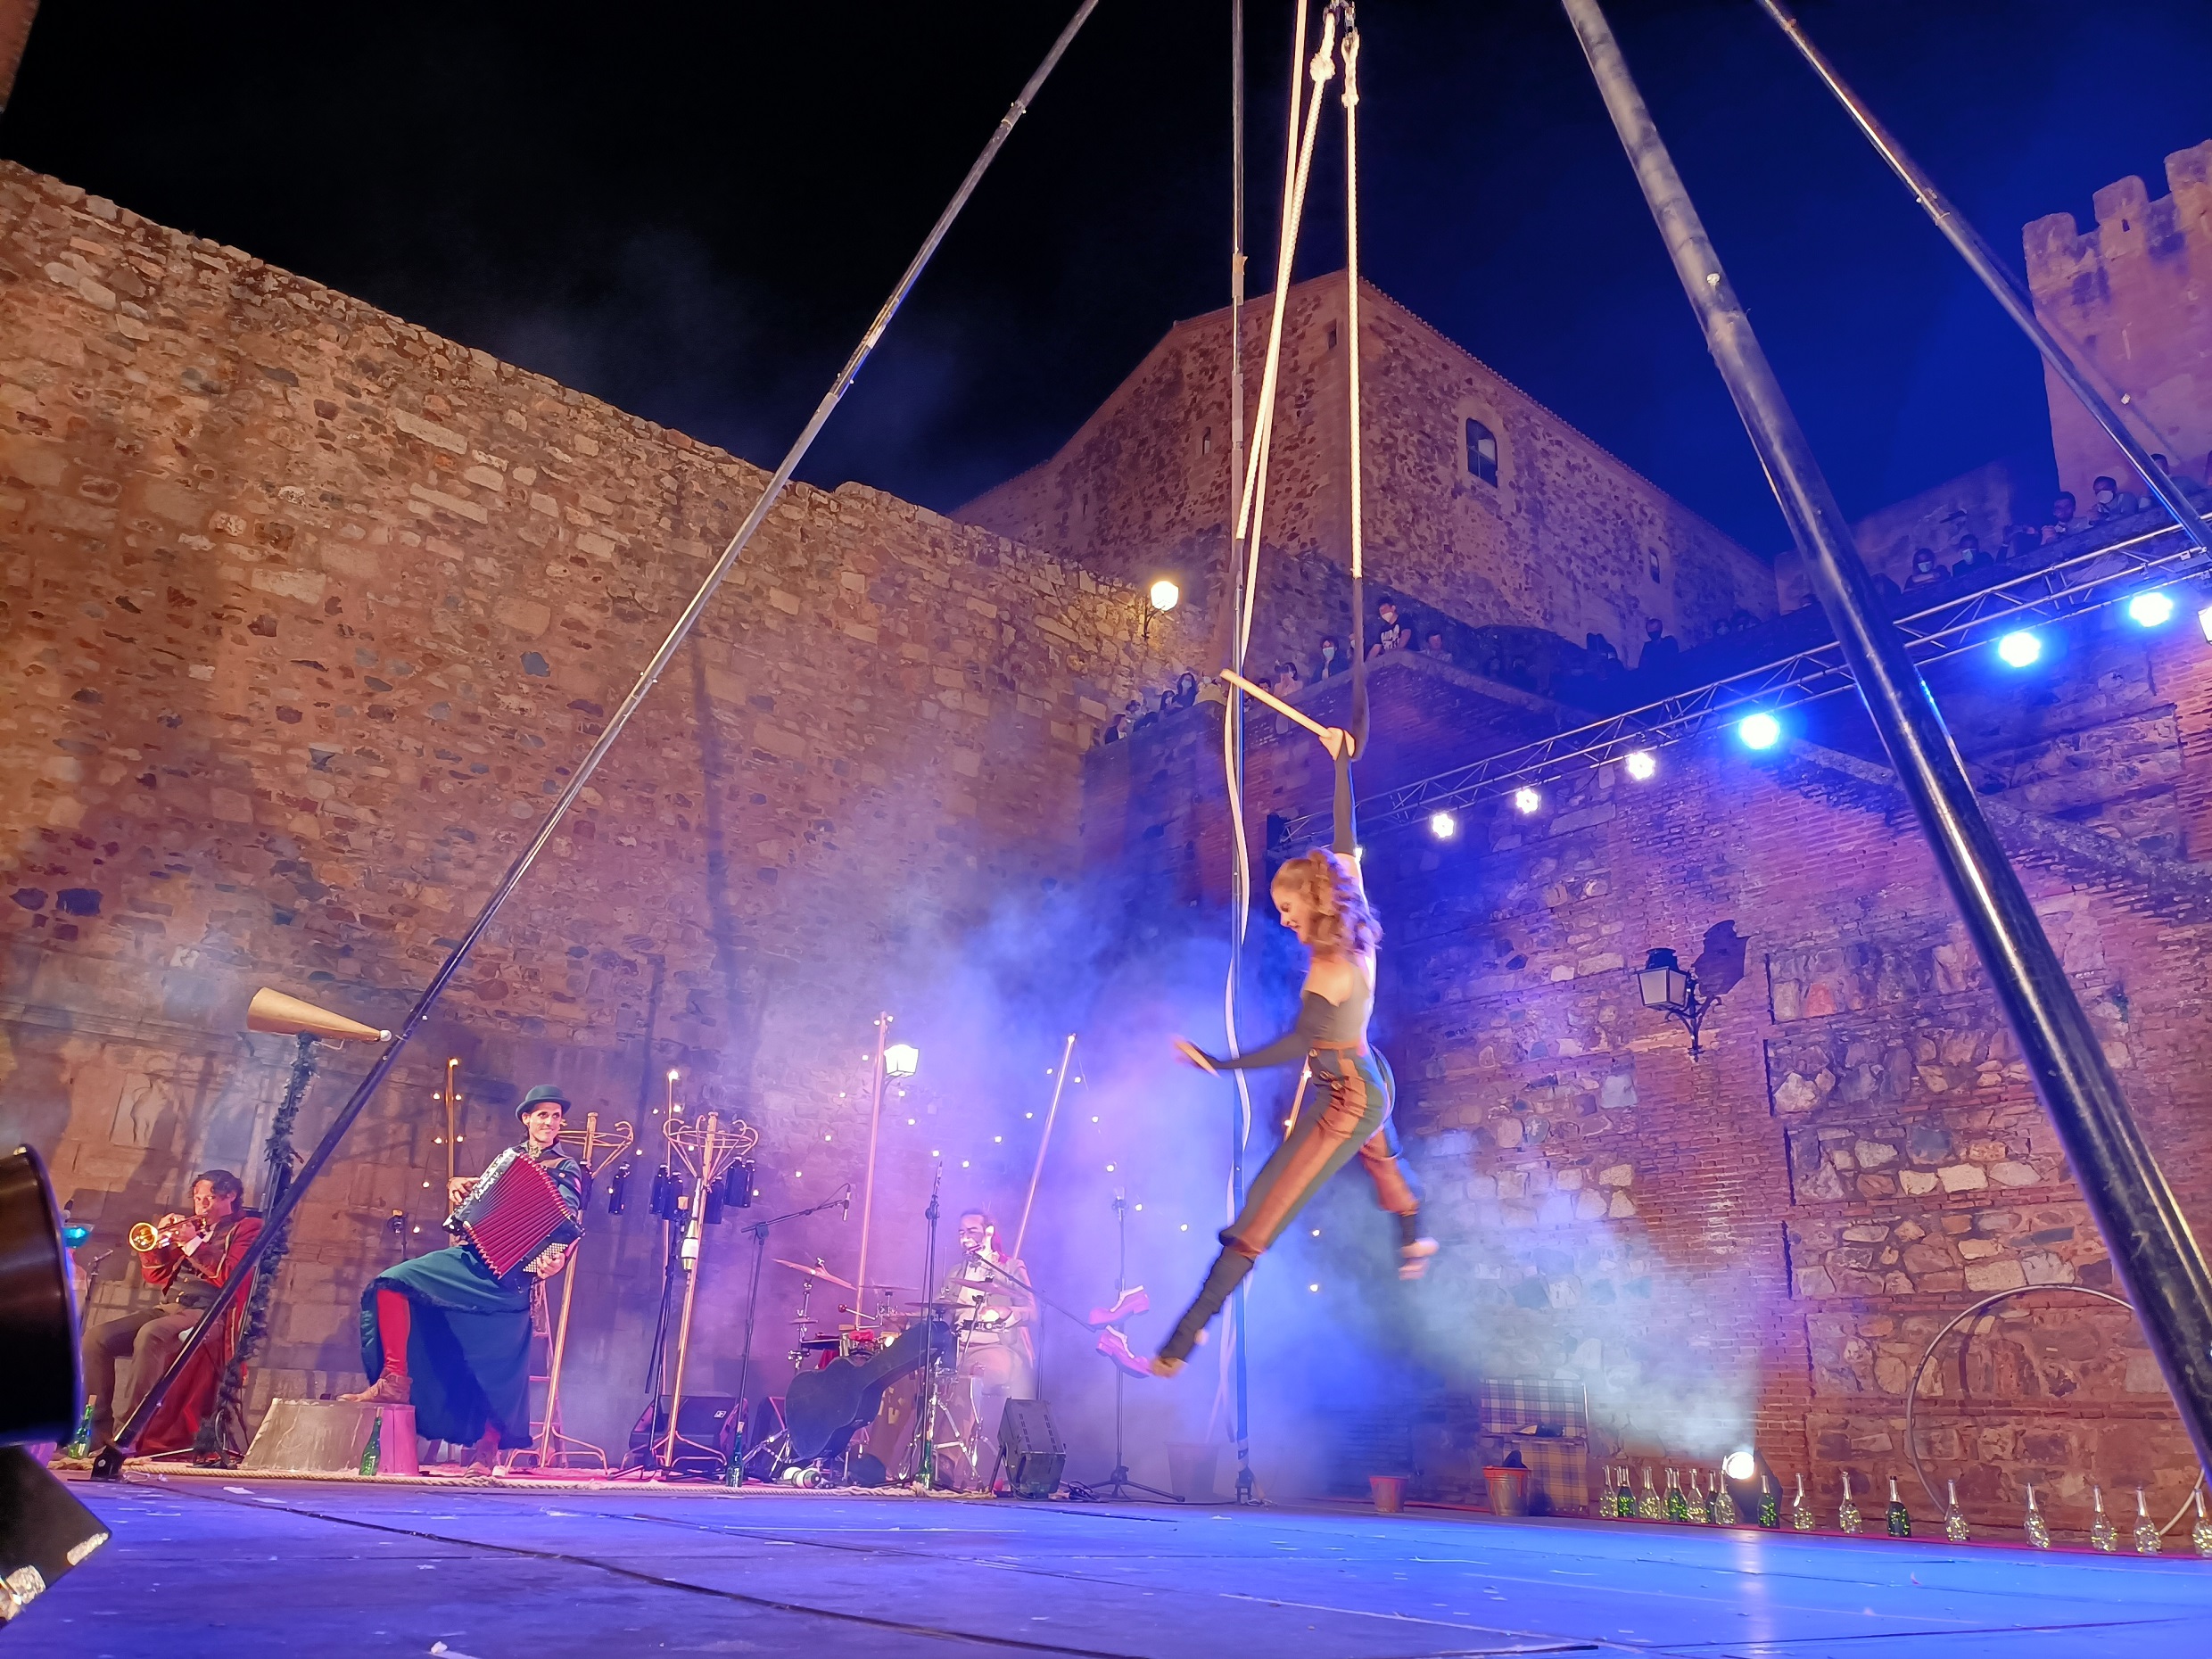 ‘Circo en la calle’ convierte el centro de Cáceres en una gran pista de circo desde mañana sábado